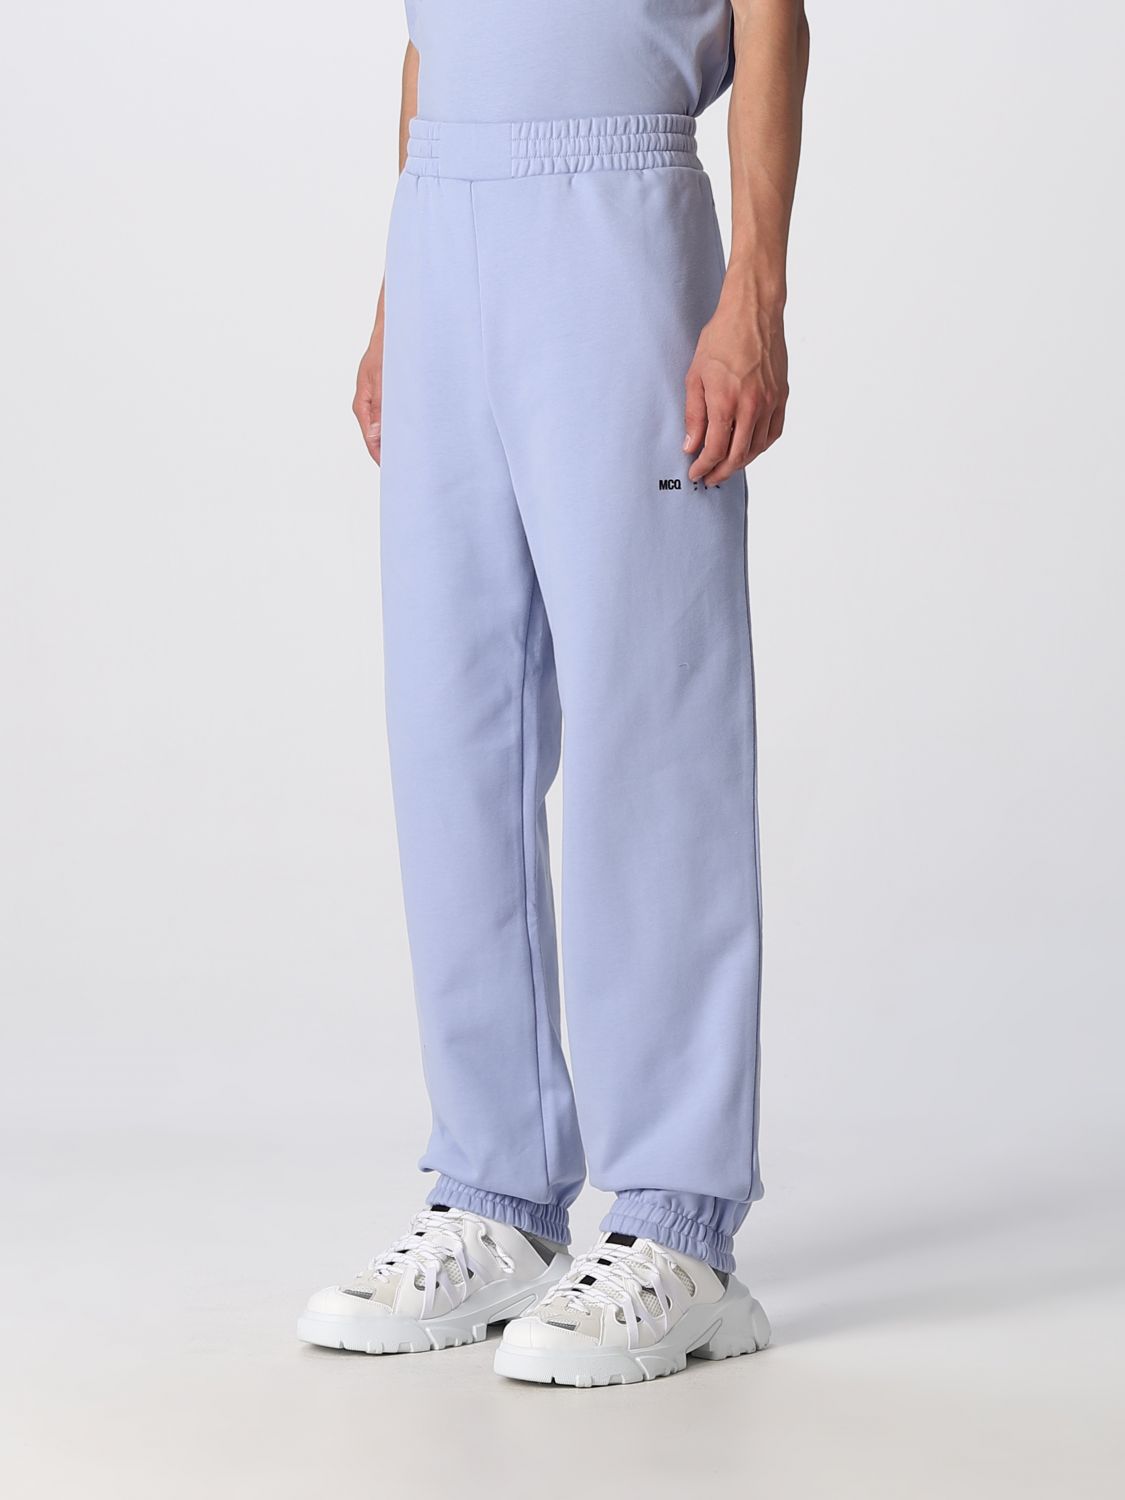 Pantalon Mcq: Pantalon Mcq homme bleu azur 4